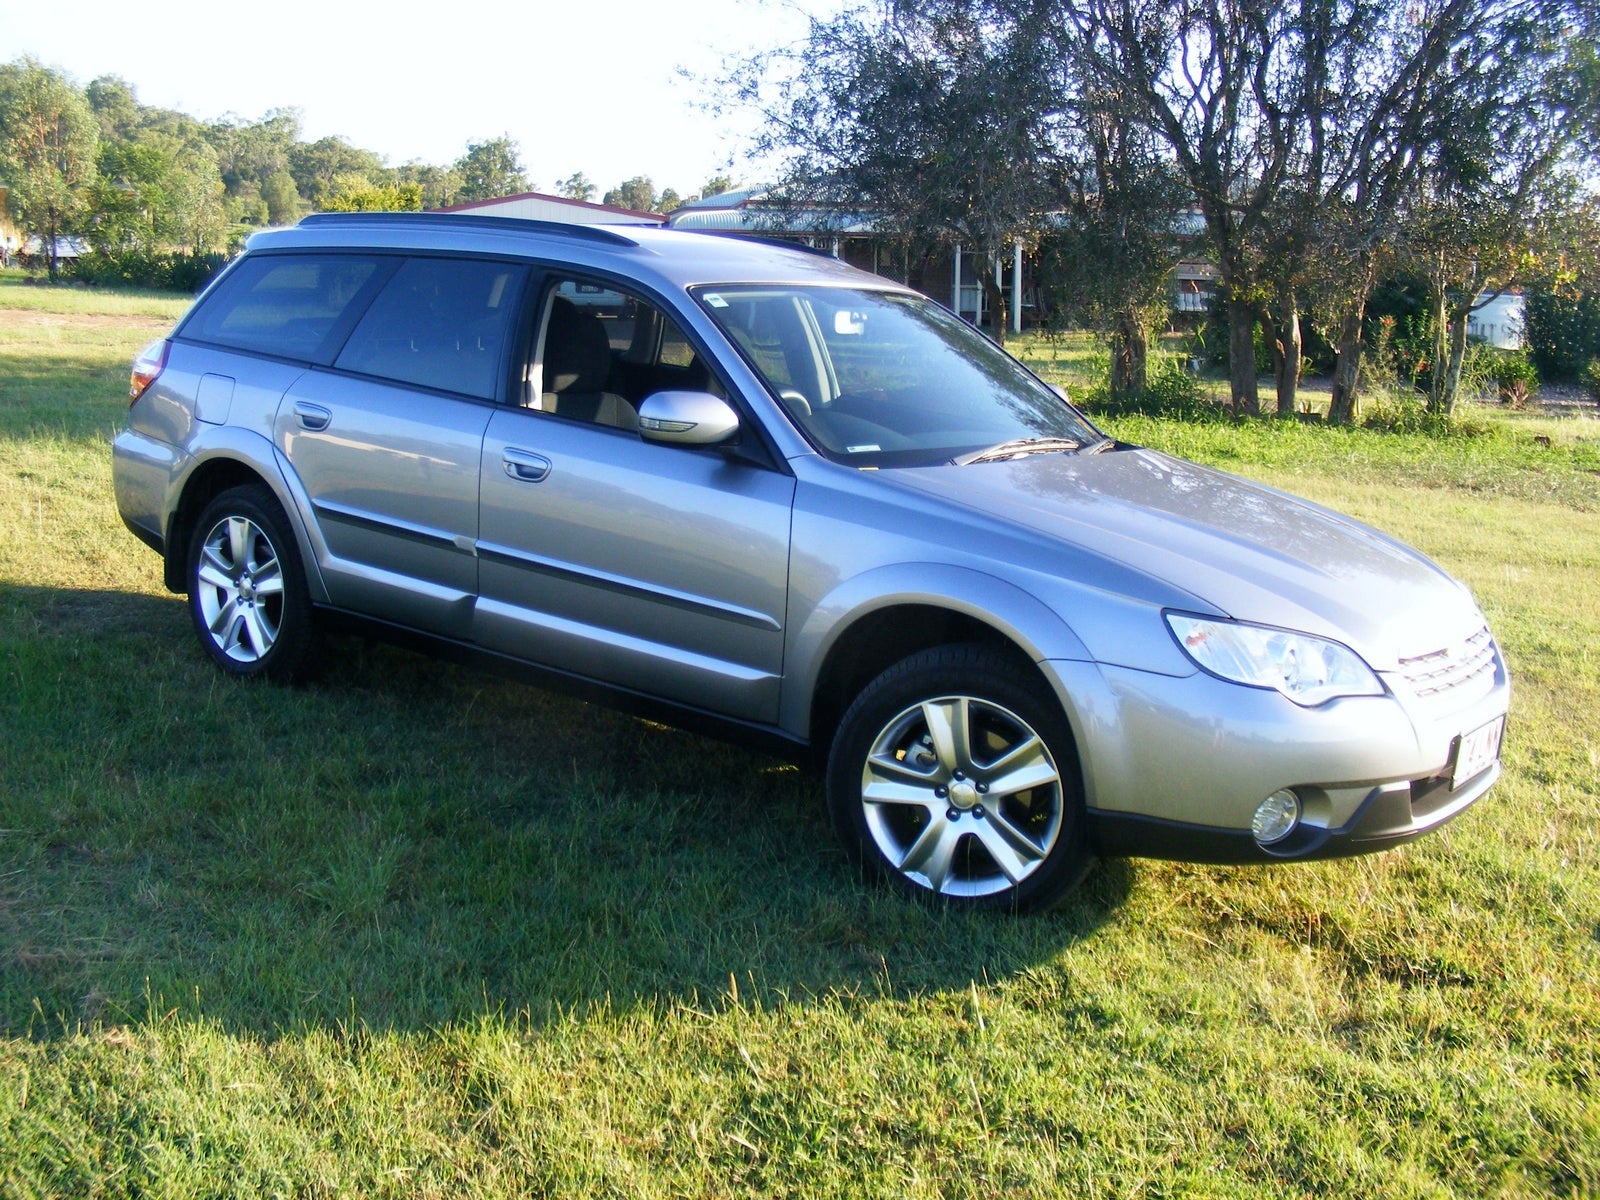 2008 Subaru Outback Exterior Pictures CarGurus